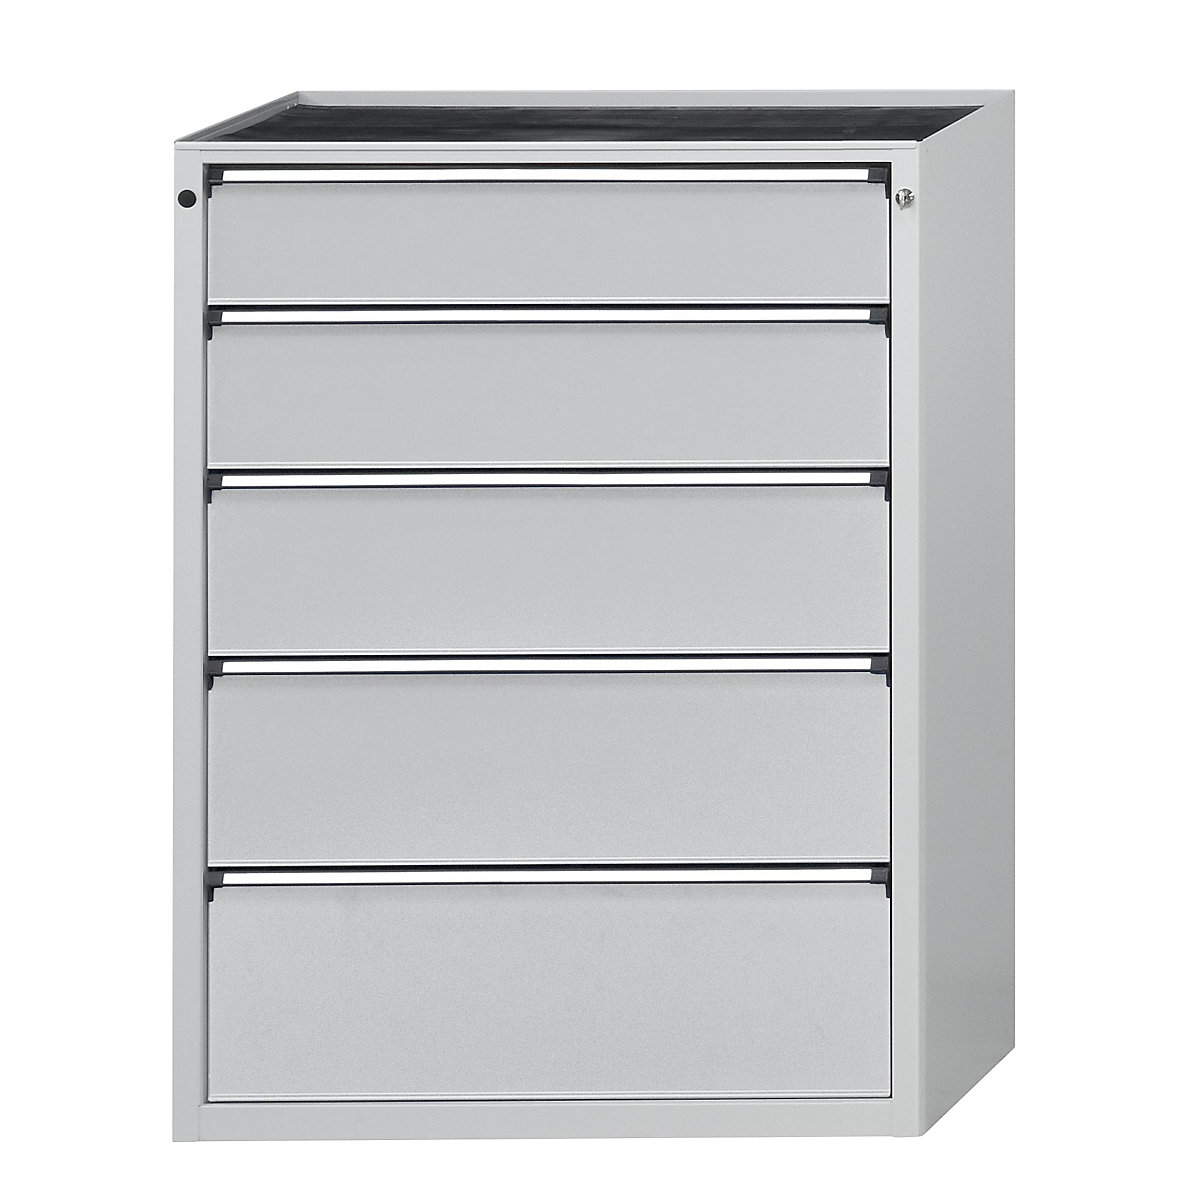 Armoire à tiroirs – ANKE, l x p 910 x 675 mm, charge max. tiroirs 200 kg, 5 tiroirs, hauteur 1280 mm, façade gris clair-16